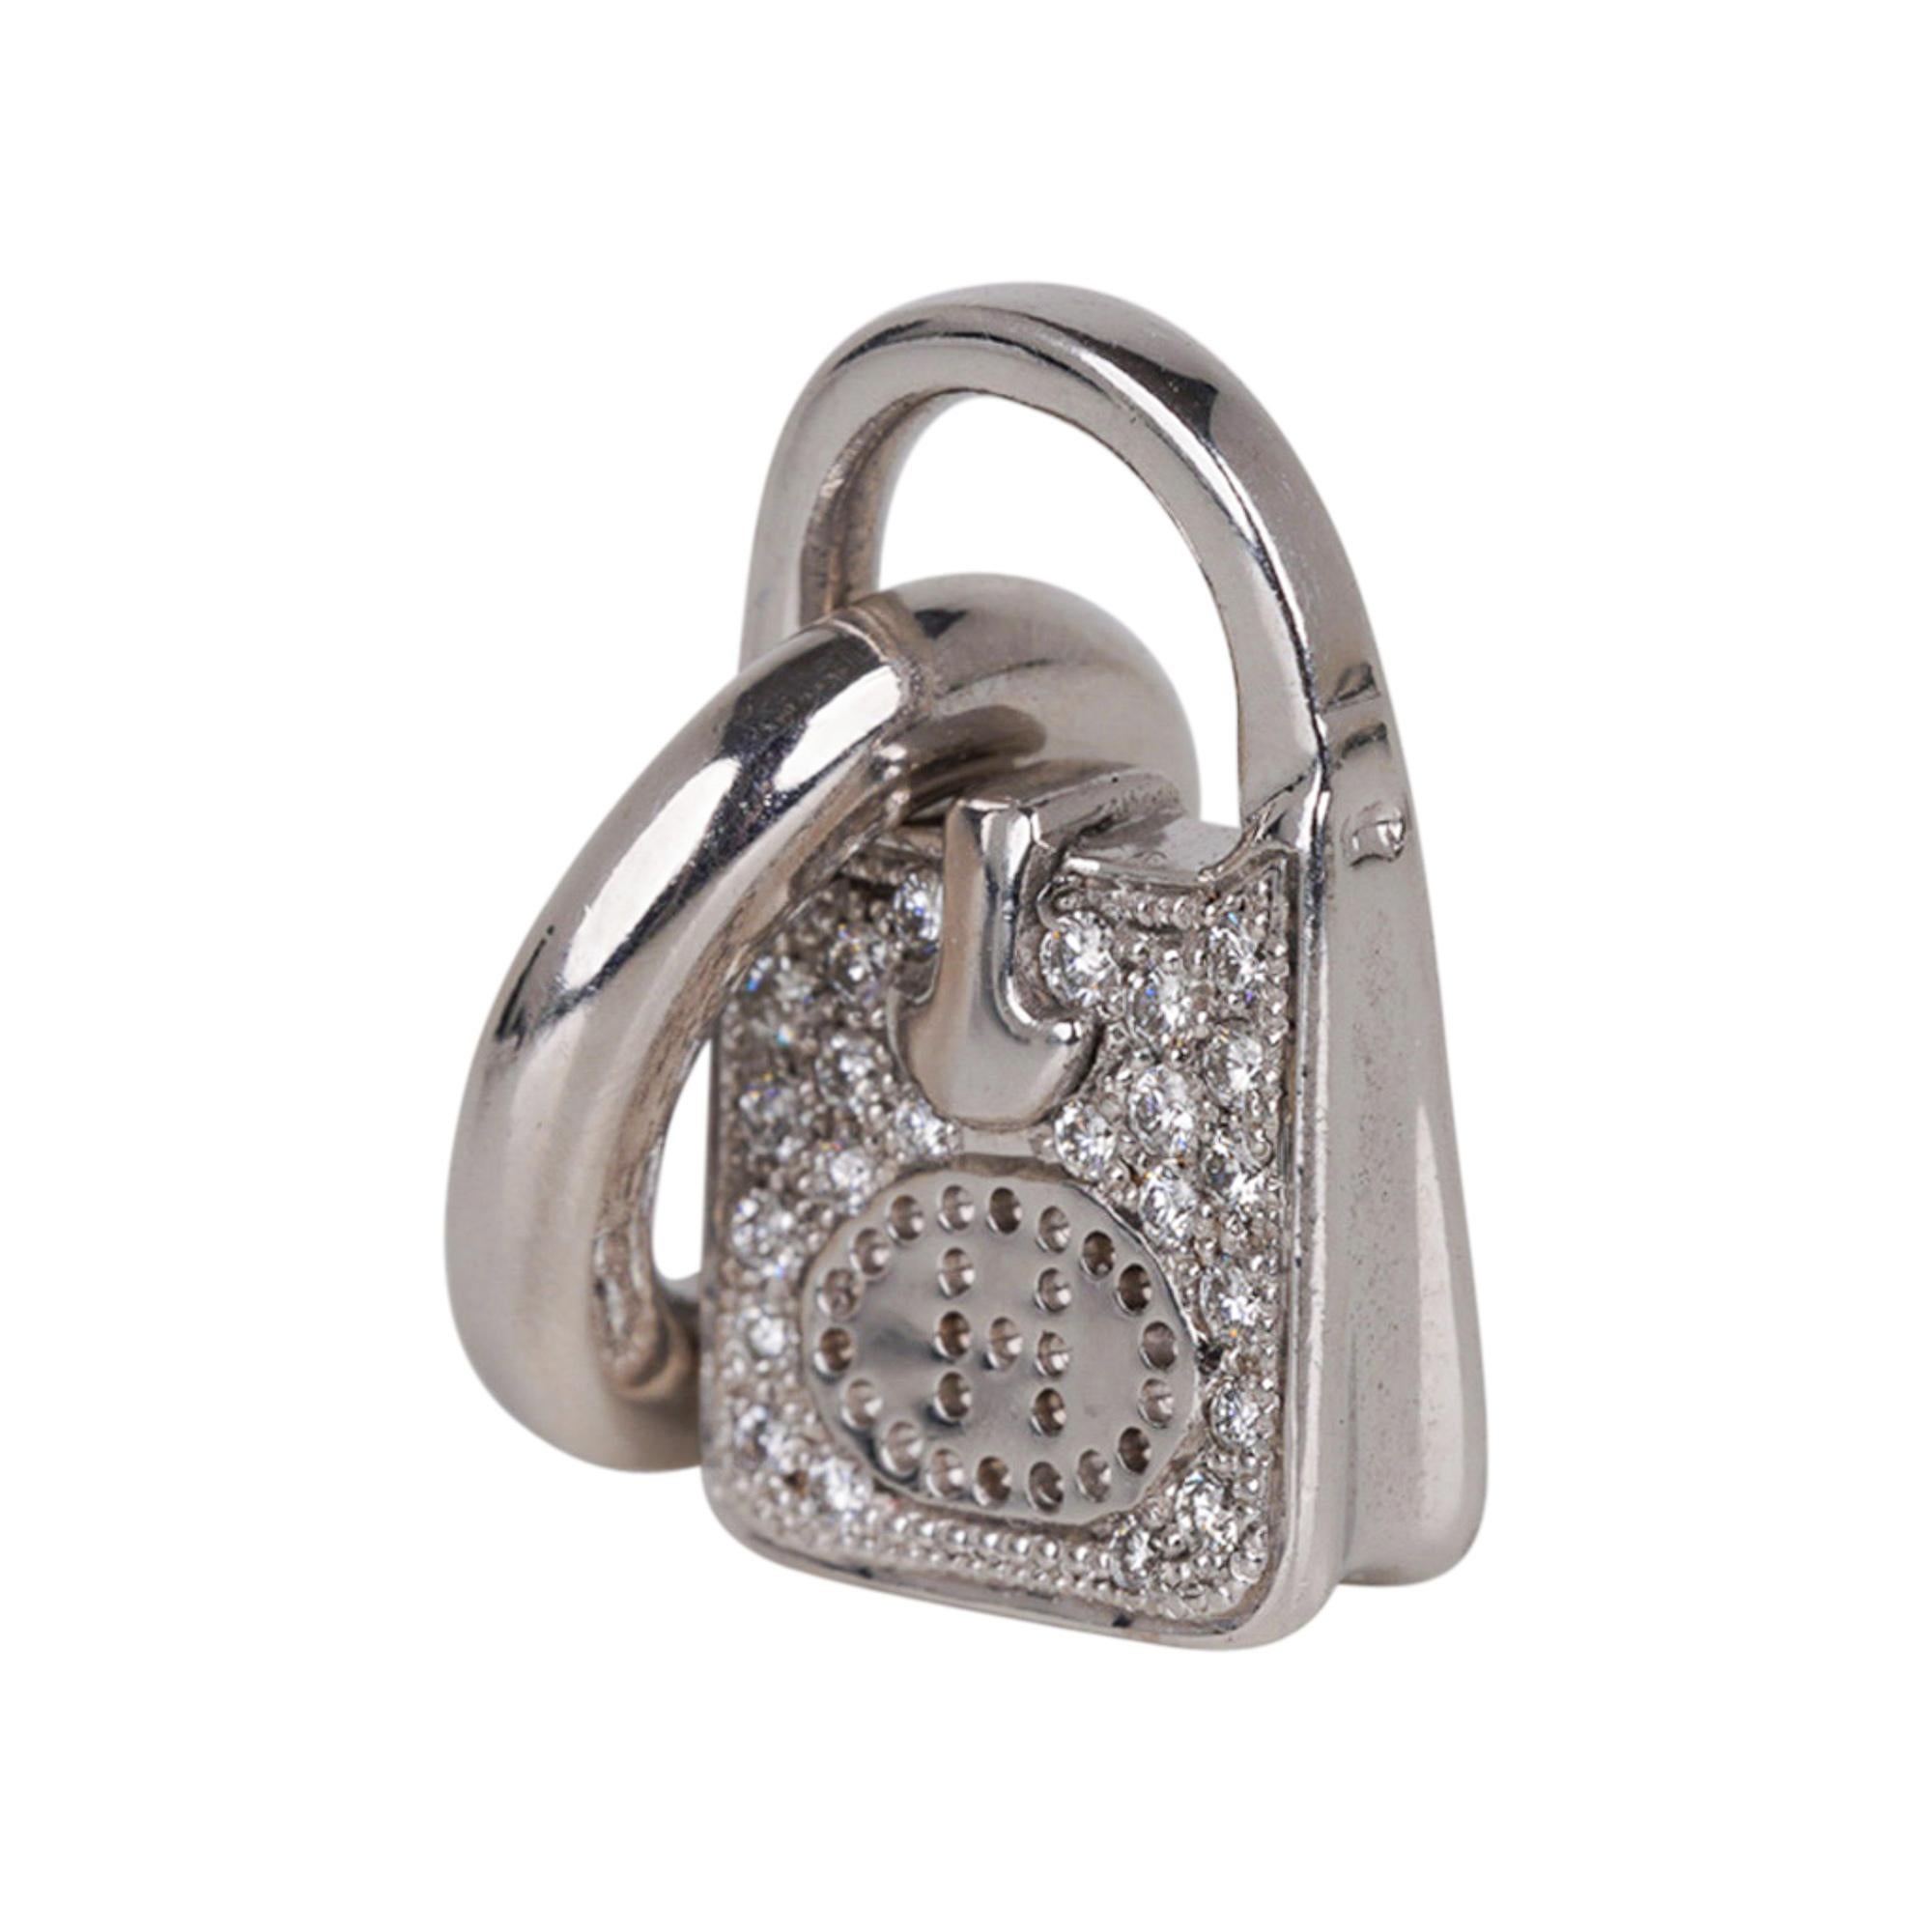 Mightychic propose une amulette /charm Hermes Diamond 18k White Gold Evelyne Bag.
Cette rare breloque Hermès Evelyne peut être portée en pendentif ou sur un bracelet.
Soigneusement conçu dans les moindres détails, y compris le H ! perforé.
Tampons